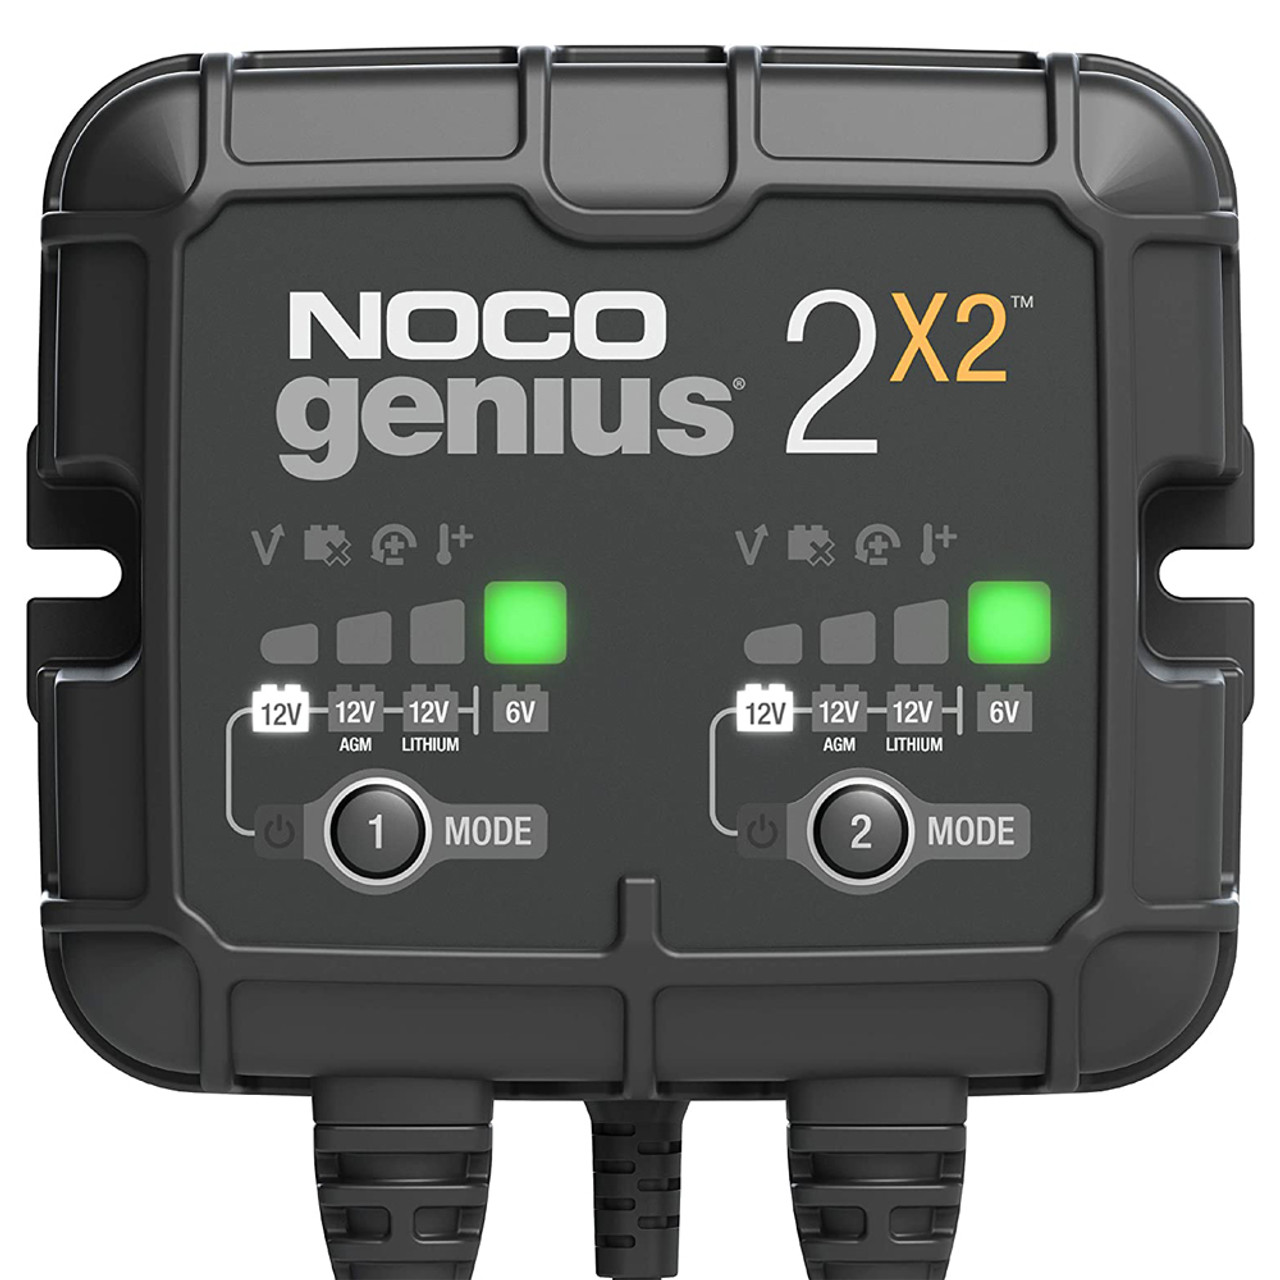 Noco Batter Charger 2-Bank 4 Amp - NOCGENIUS2X2